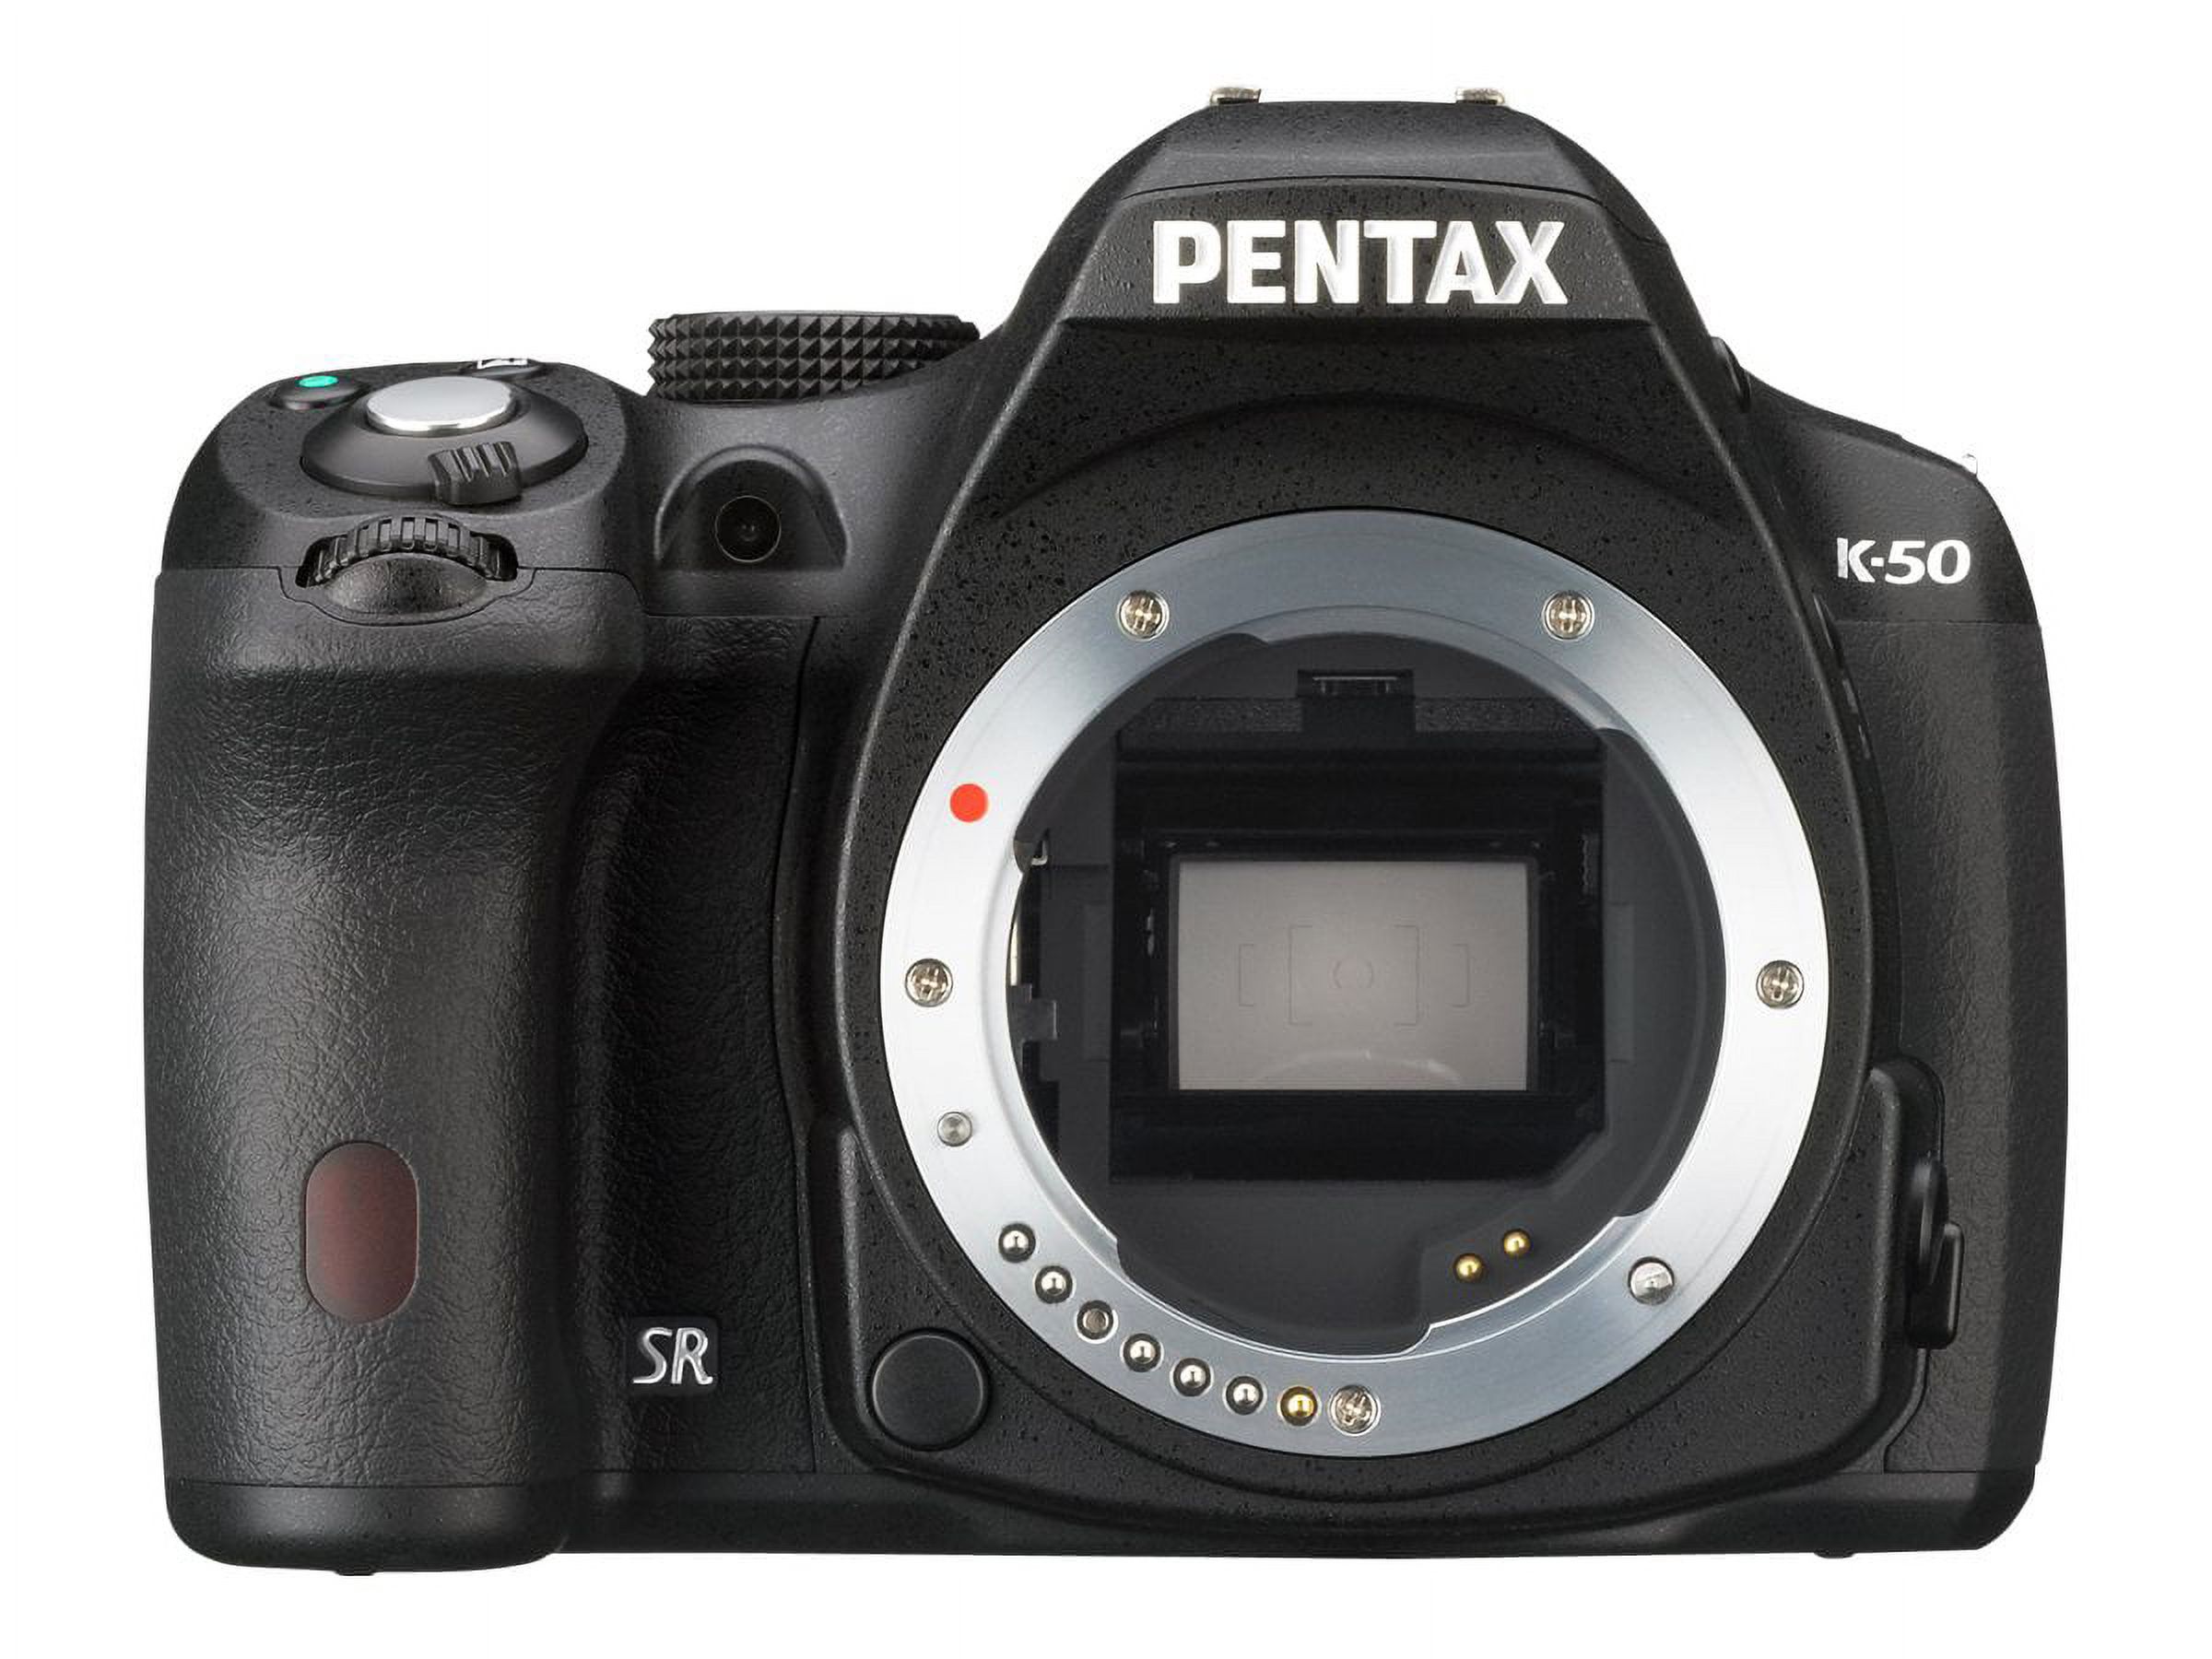 Pentax K-50 16.3 Megapixel Digital SLR Camera Body Only, Black - image 5 of 11